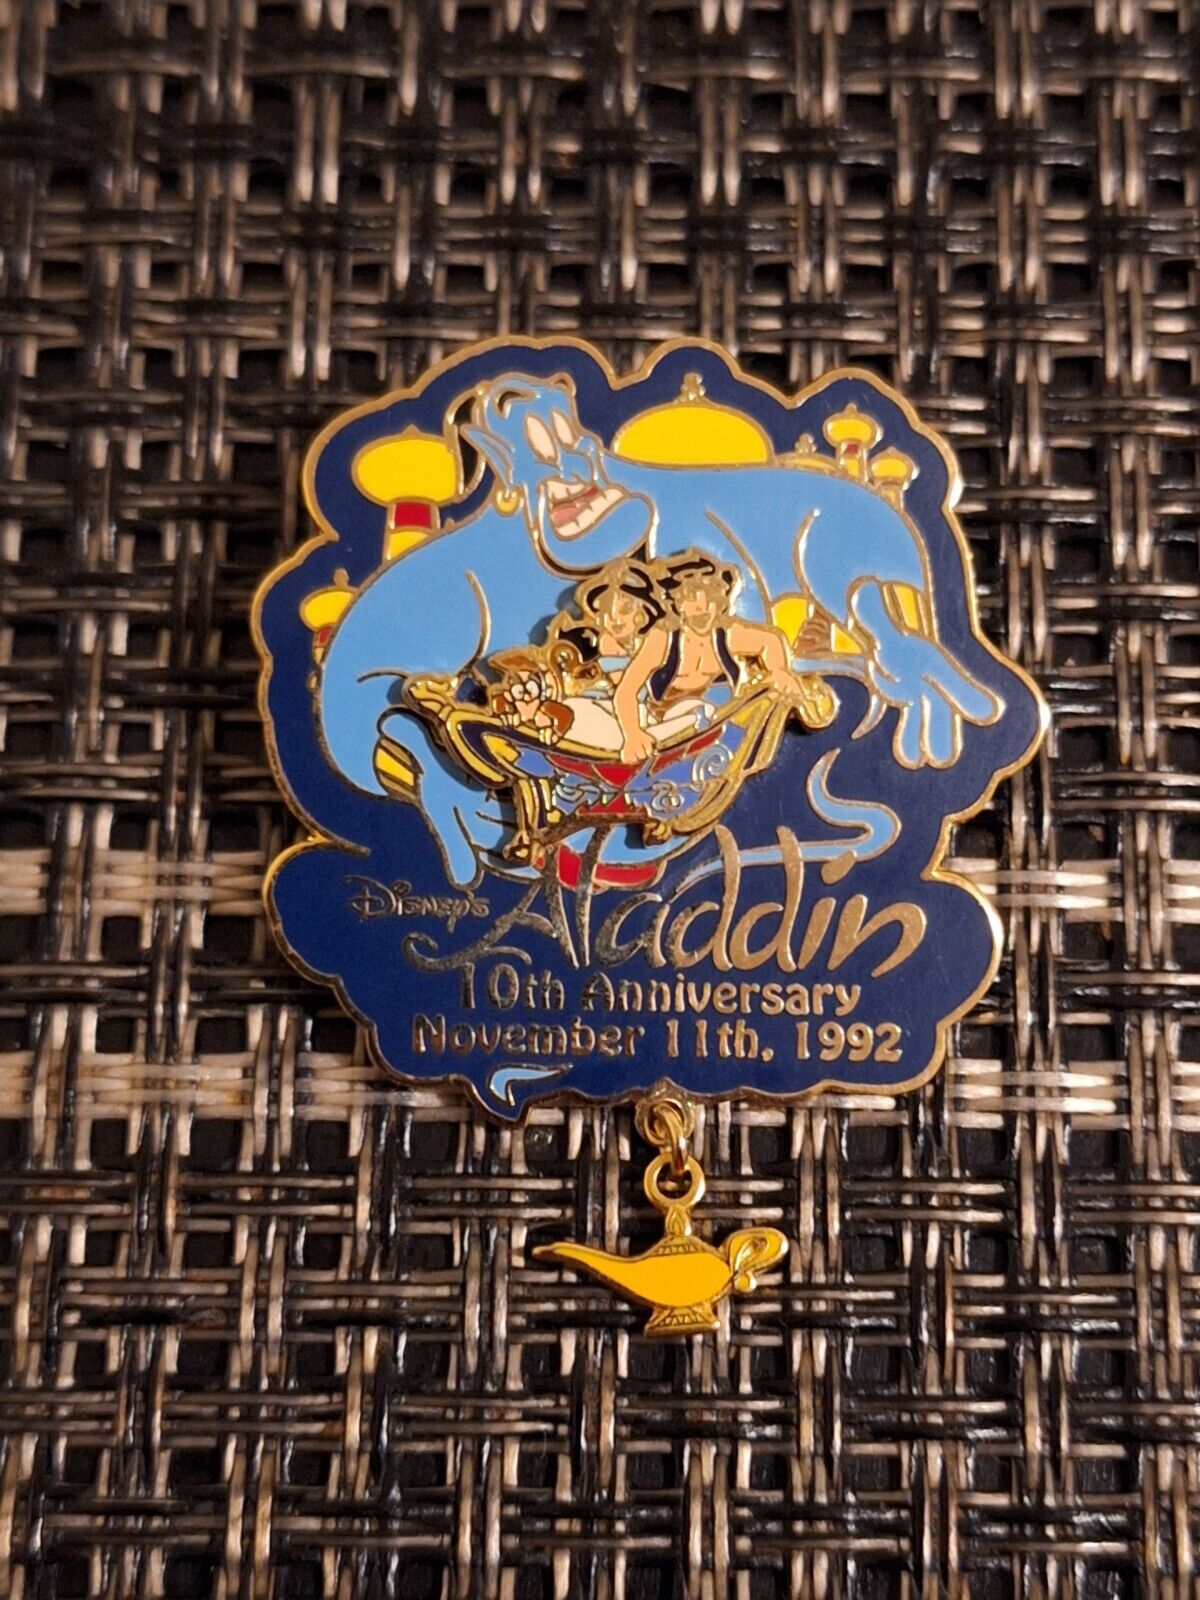 2002 Disney's Aladdin 10th Anniversary November 11th 1992 Dangle Pin LE 5000